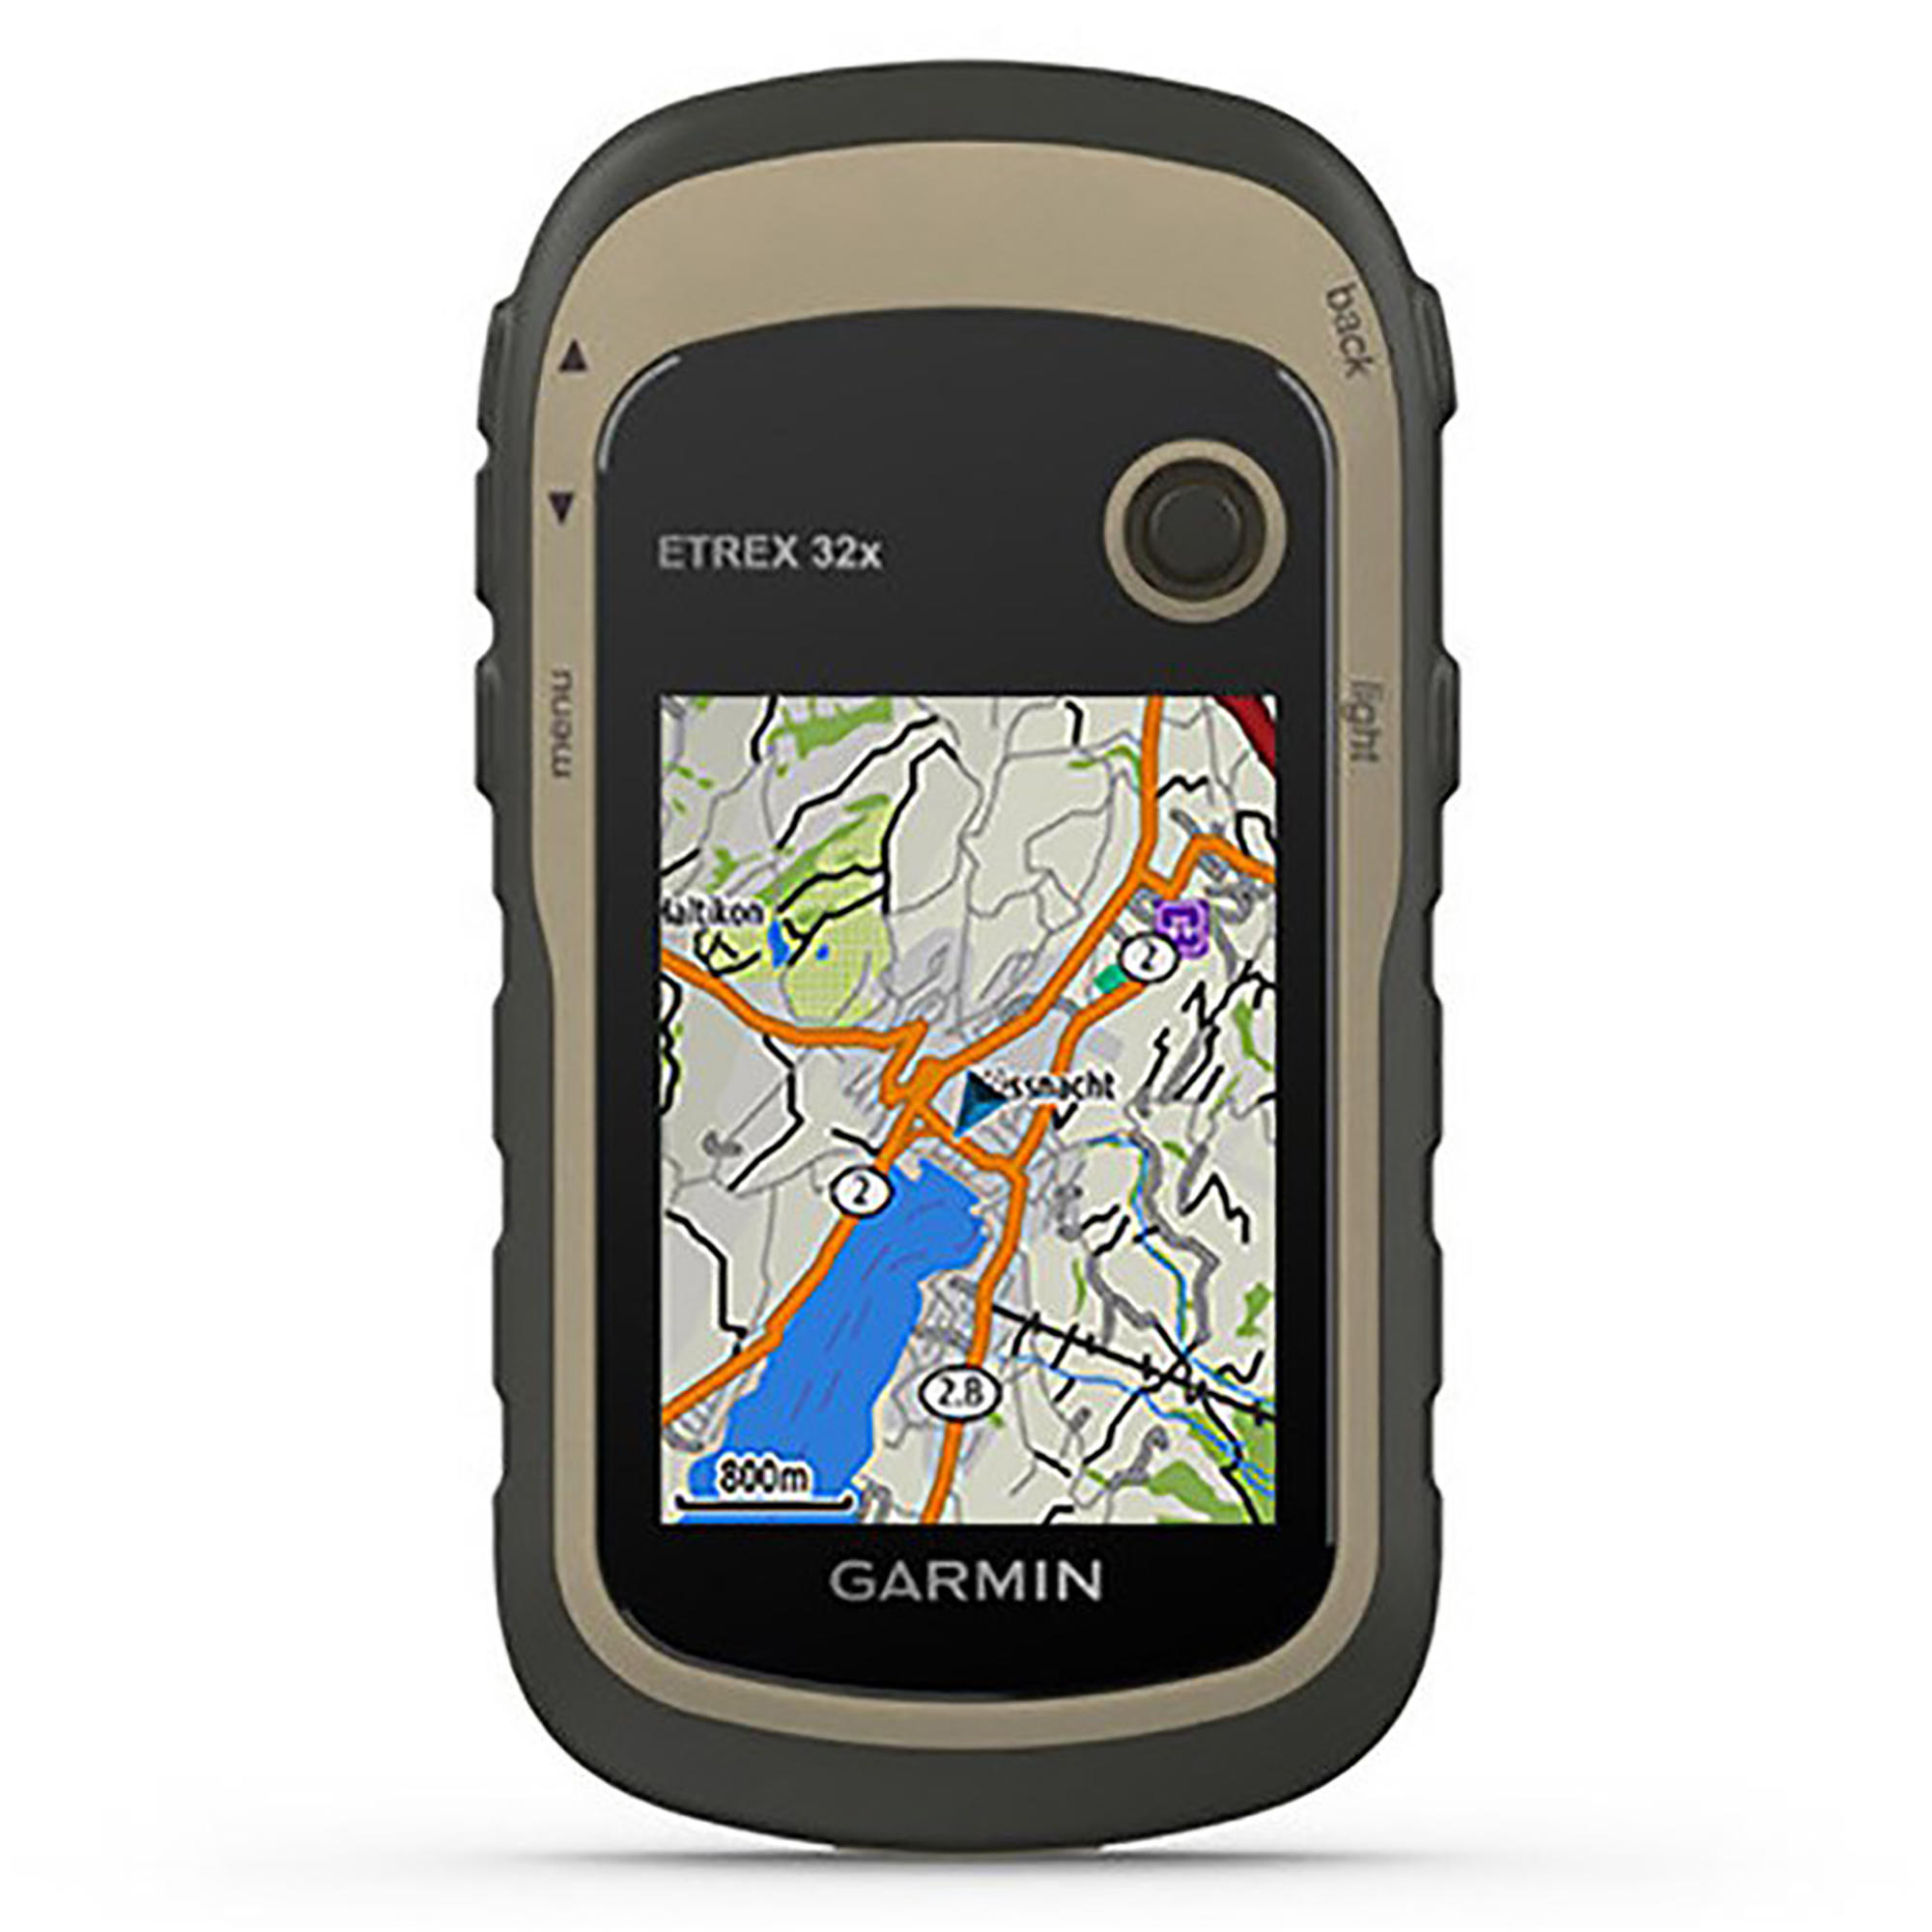 Nacht Het is goedkoop Amfibisch GPS kopen? | Decathlon.nl